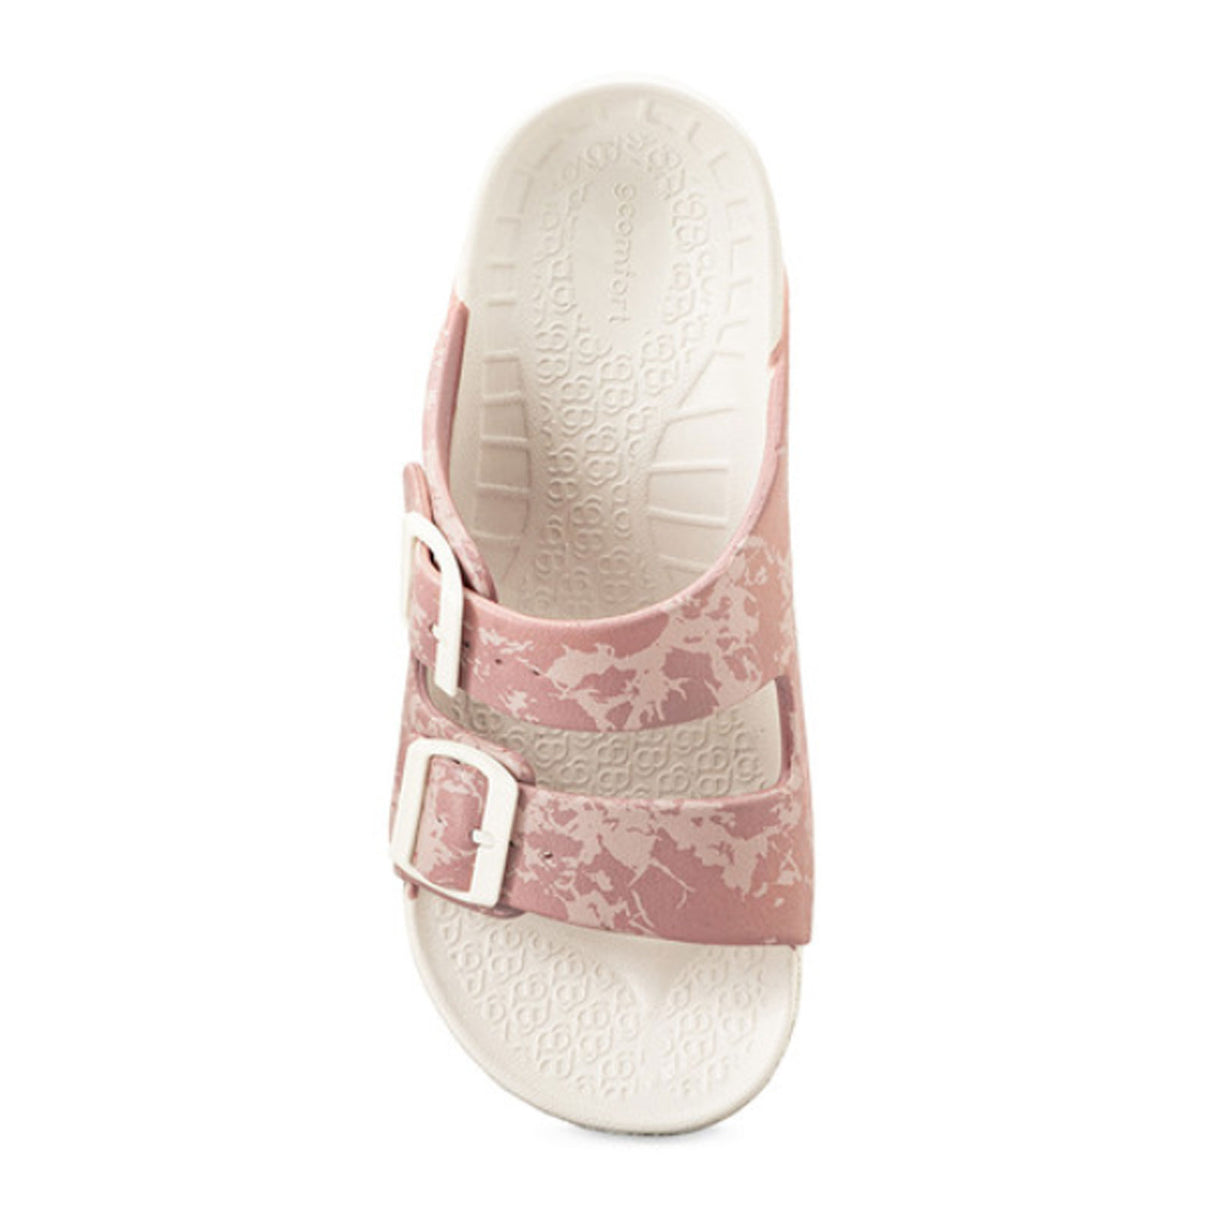 Gravity Defyer UpBov Slide Sandal (Women) - Pink Sandals - Slide - The Heel Shoe Fitters